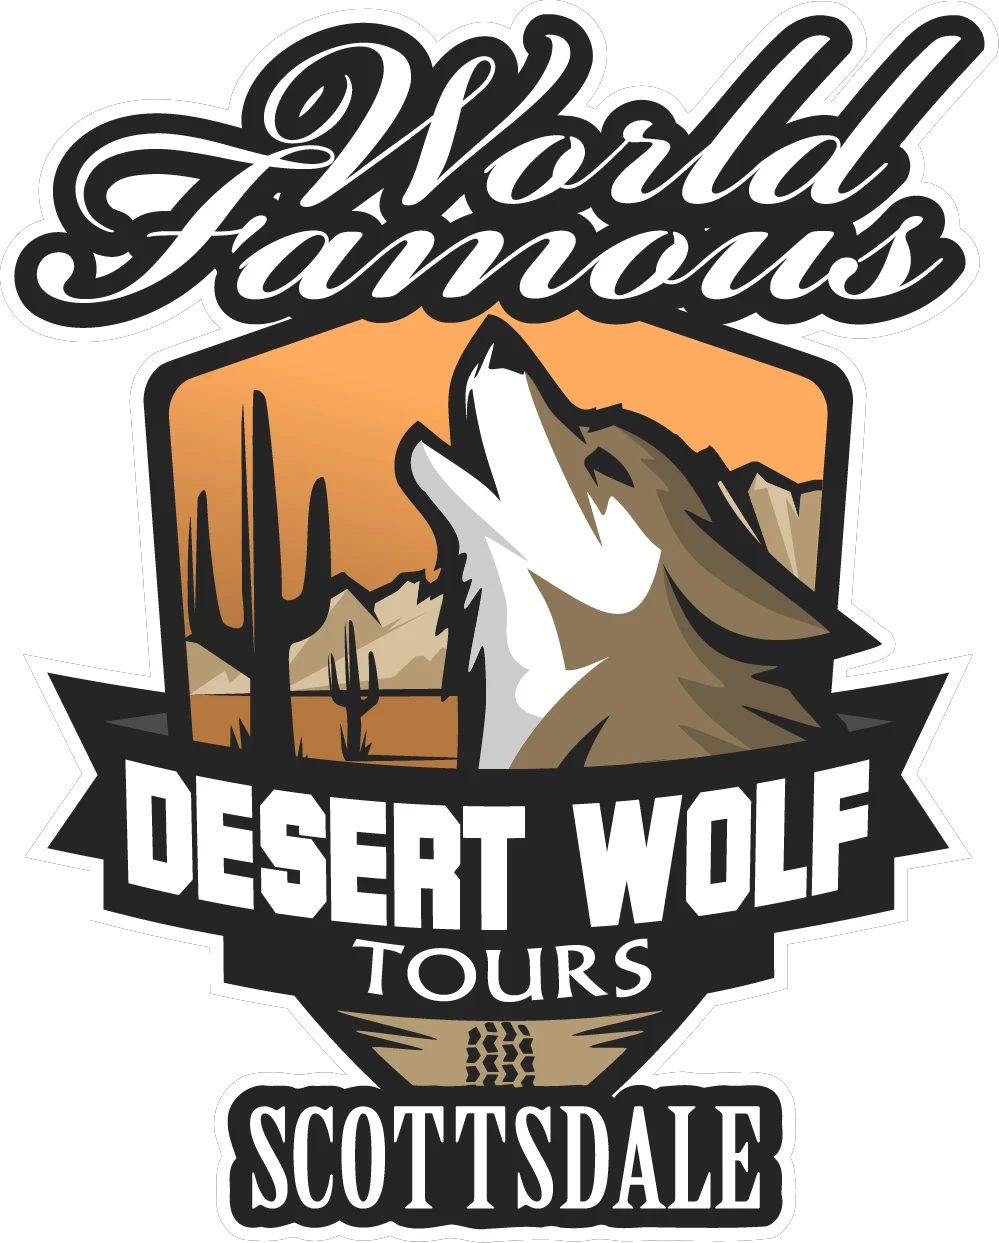 desertwolftours.com